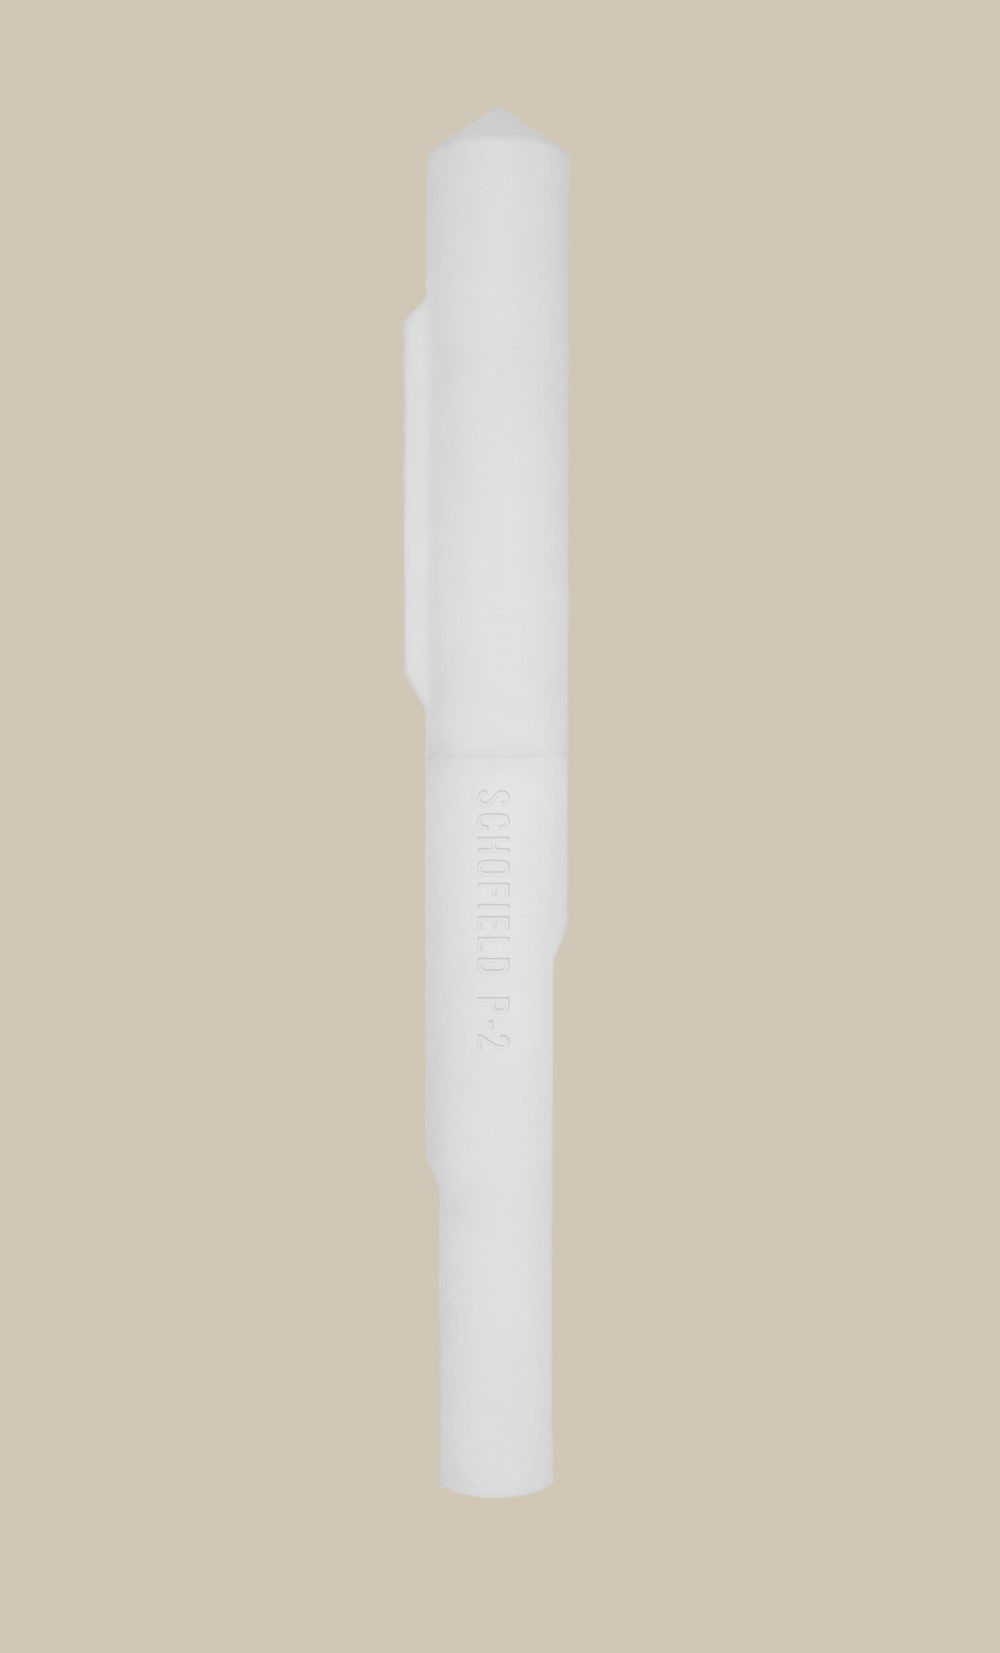 White pen